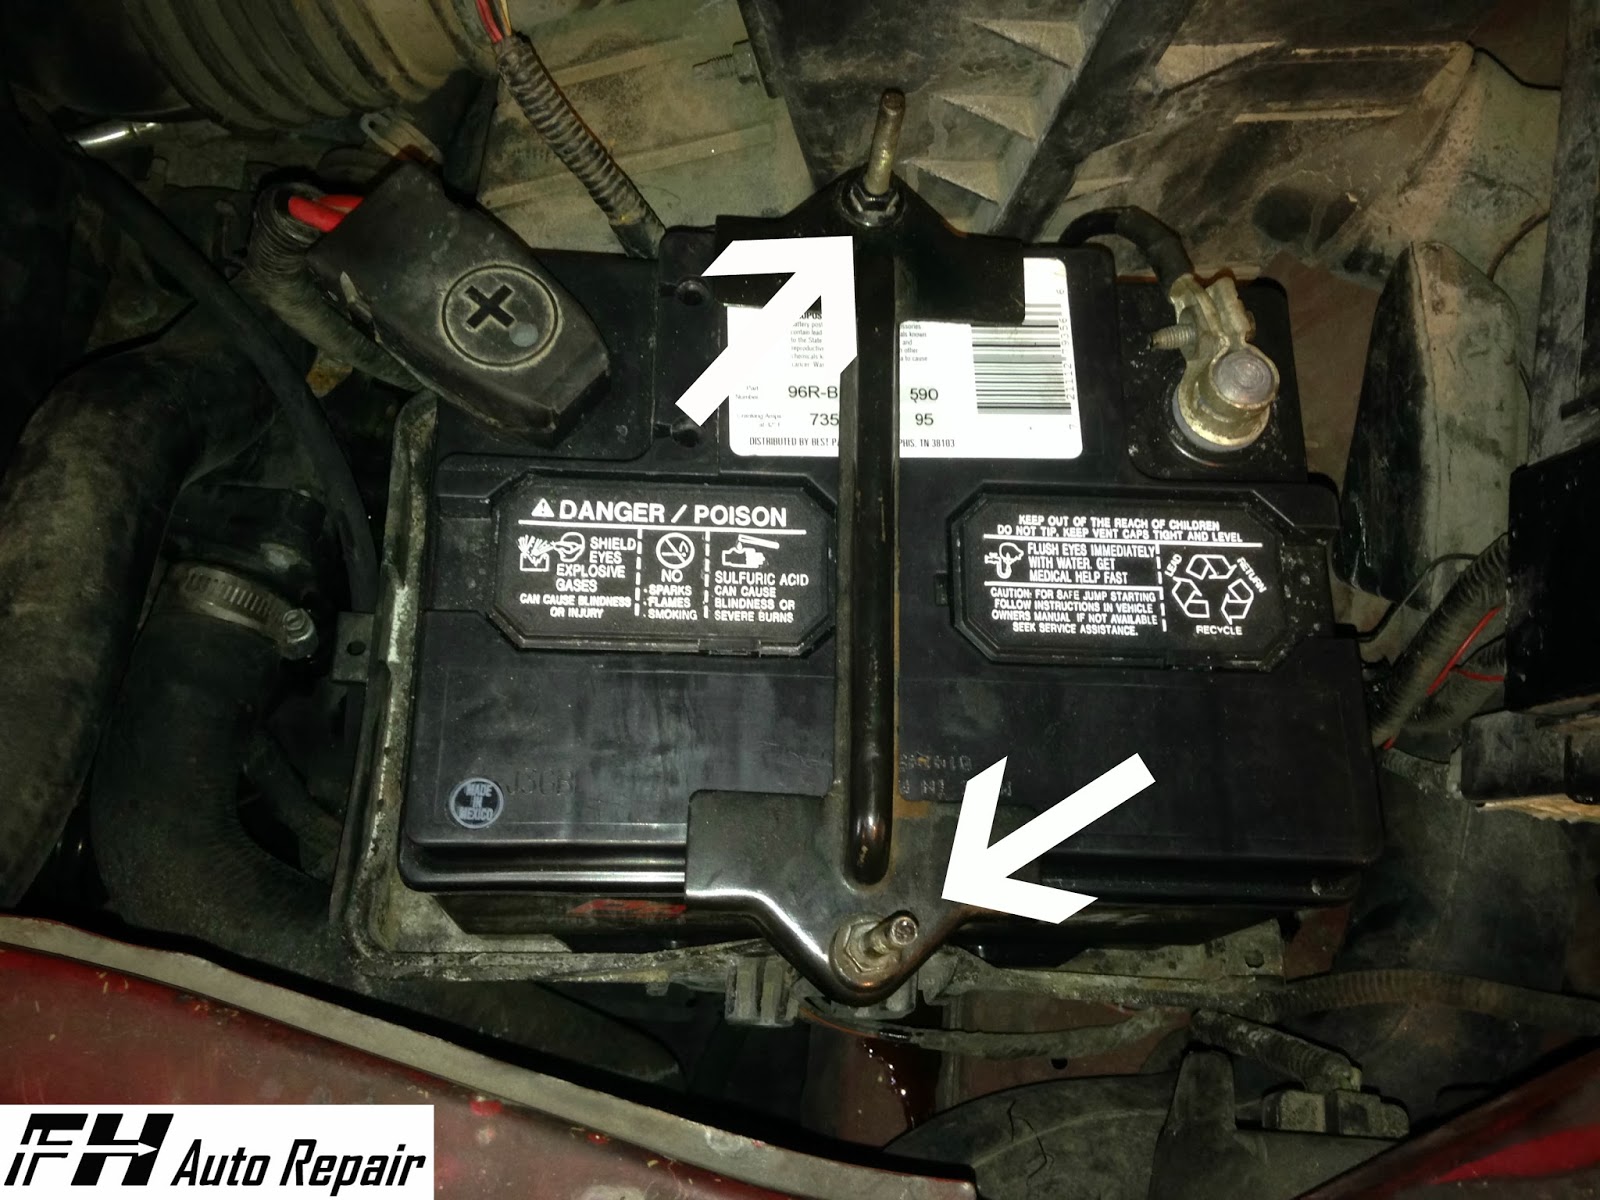 Merja: Chapter Ford escape hybrid battery repair